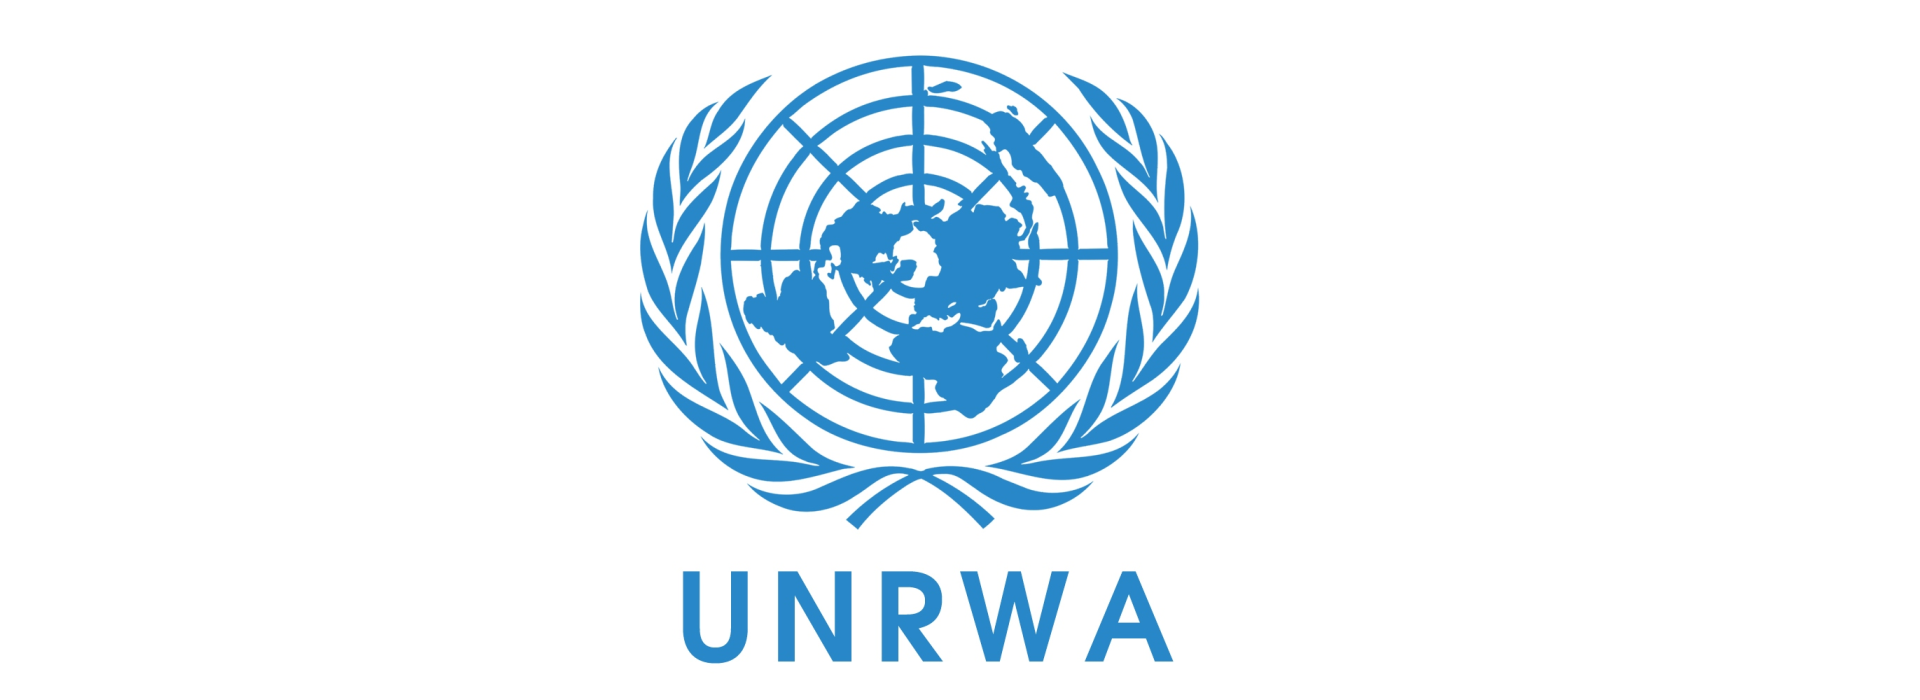 Qəzzaya təchizat axınında ciddi dəyişiklik olmayıb - UNRWA